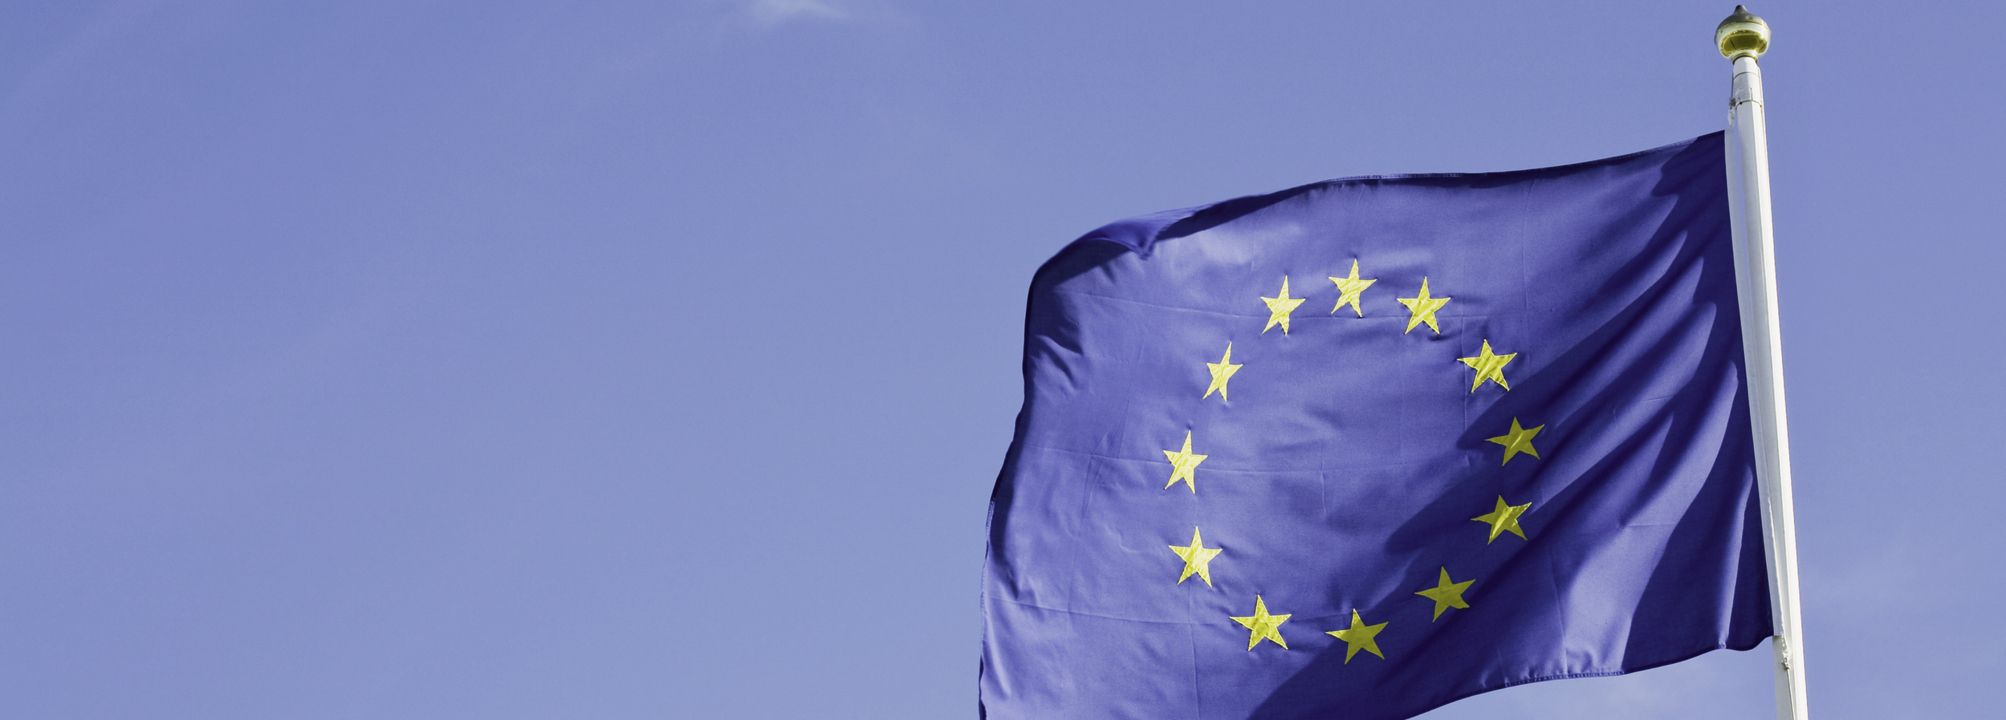 EU-flagga vajar mot blå himmel.